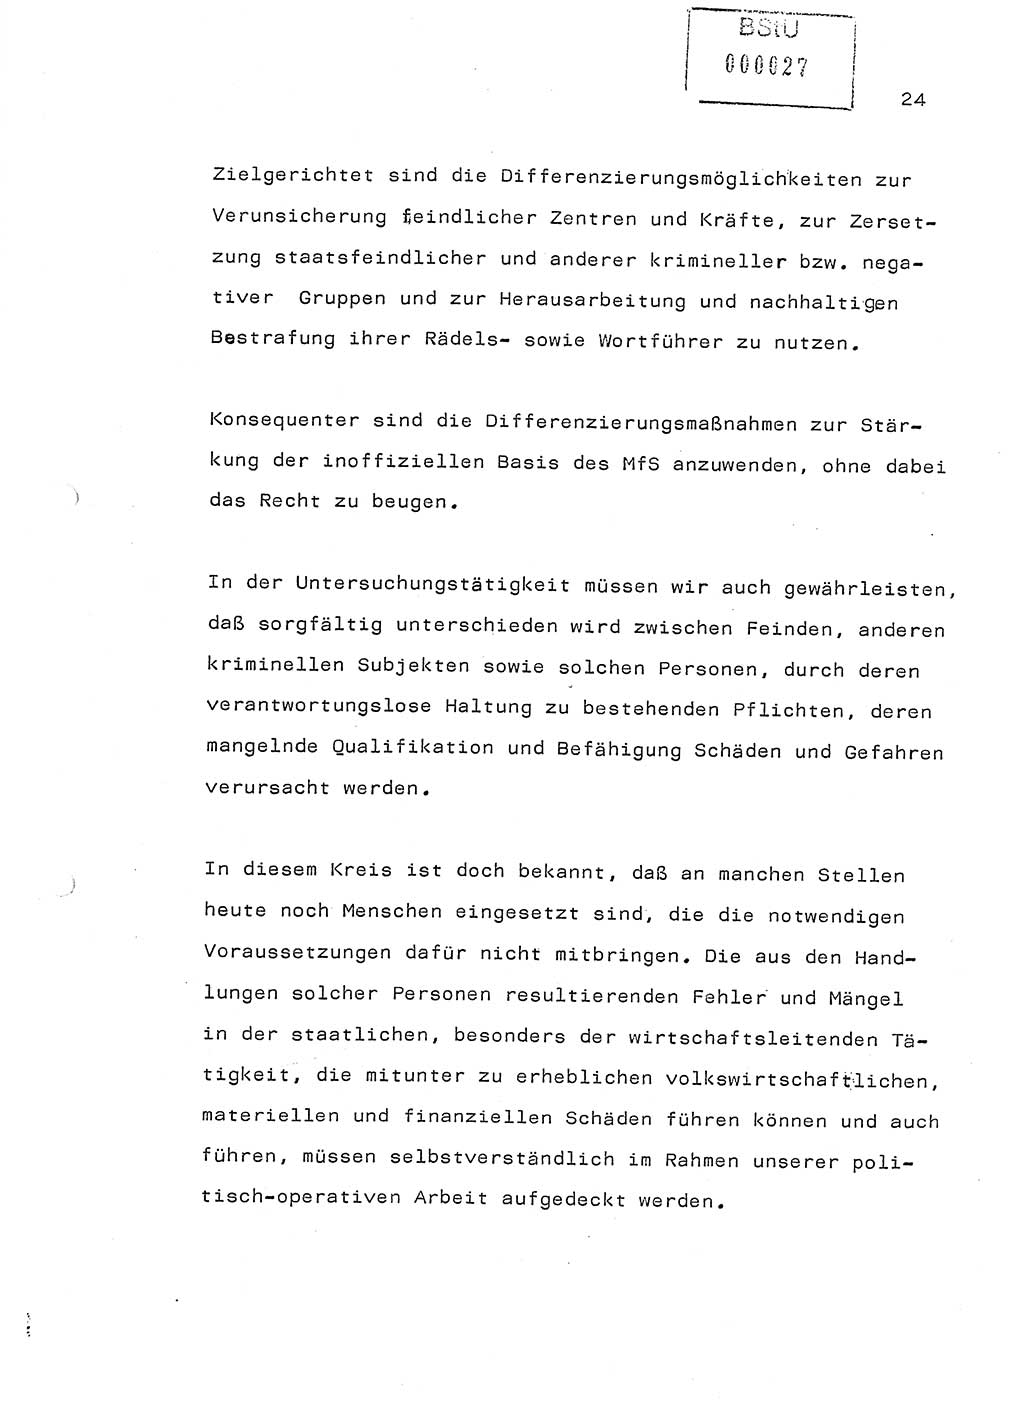 Referat (Generaloberst Erich Mielke) auf der Zentralen Dienstkonferenz am 24.5.1979 [Ministerium für Staatssicherheit (MfS), Deutsche Demokratische Republik (DDR), Der Minister], Berlin 1979, Seite 24 (Ref. DK DDR MfS Min. /79 1979, S. 24)